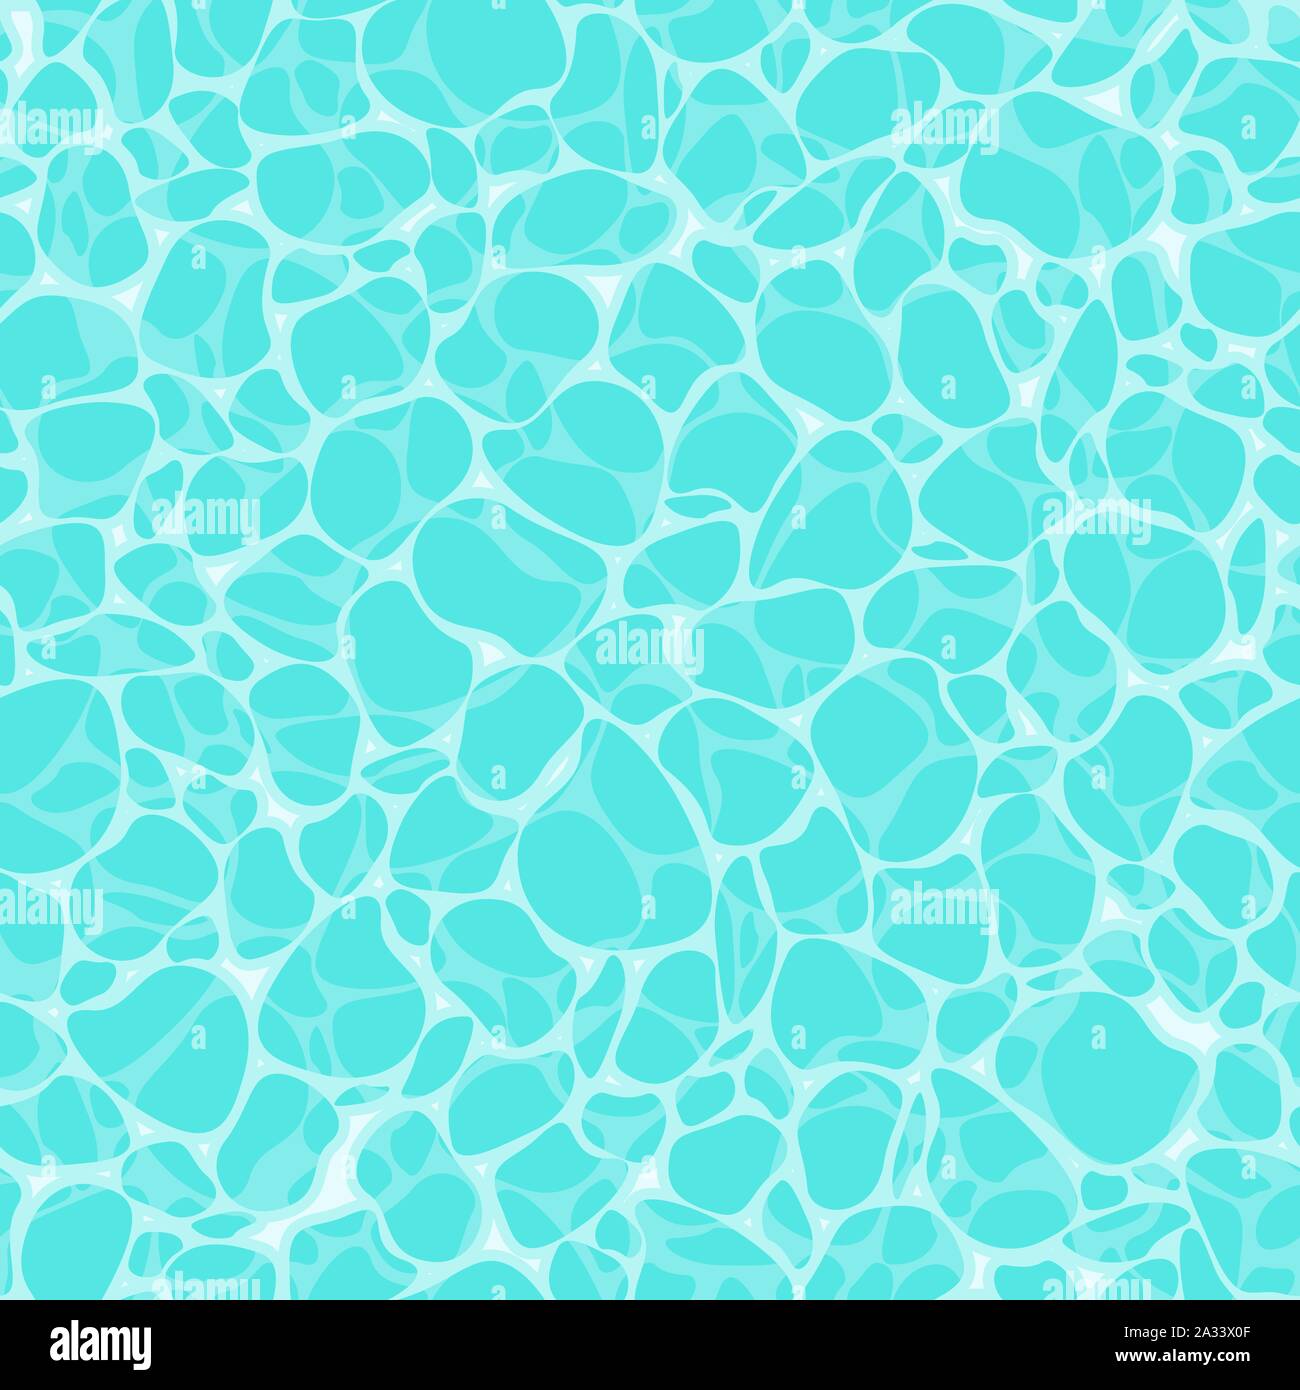 Superficie de agua turquesa de fondo sin fisuras, mar, océano y piscina con rizo y el reflejo del sol de vista superior en estilo plano Ilustración del Vector